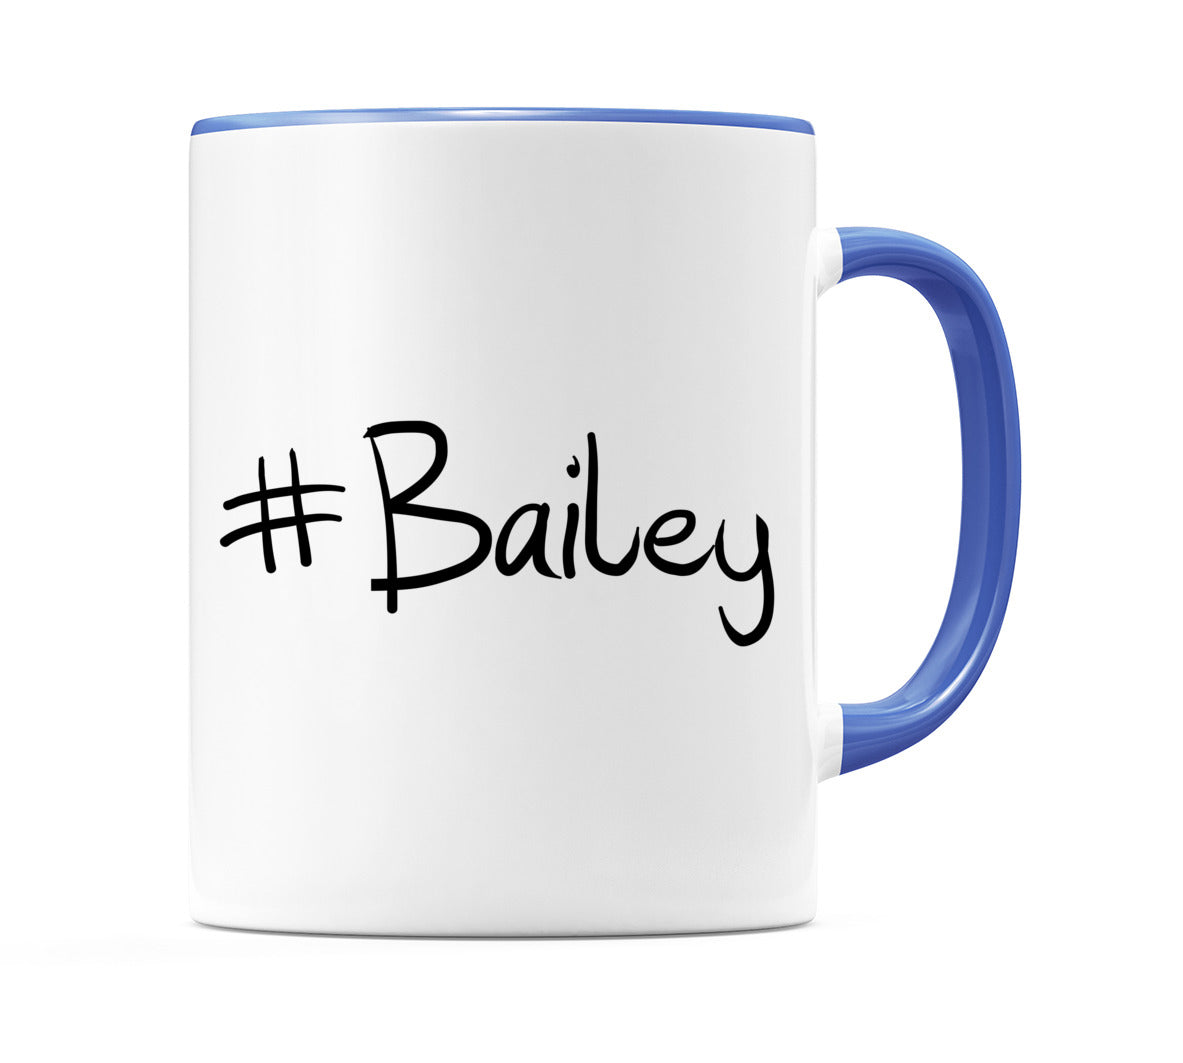 #Bailey Mug